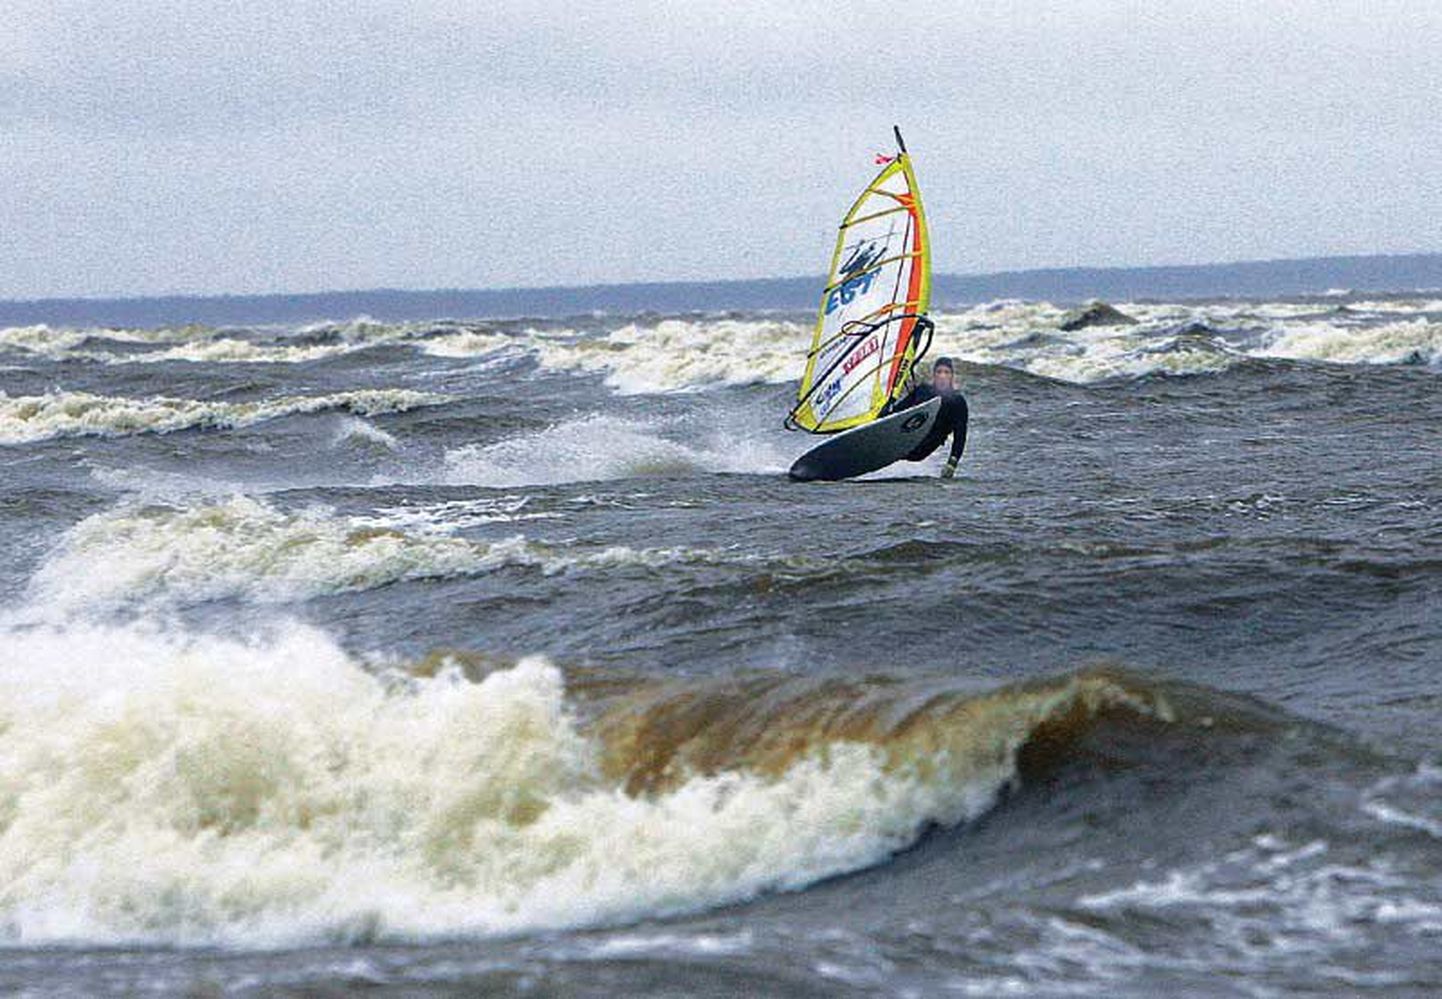 Kuigi suuri üleujutusi torm ei toonud, puhus tuul piisavalt tugevalt purjelaudurite rõõmuks, kes eile Pärnu rannas vahutavatest lainetest viimast võtsid.